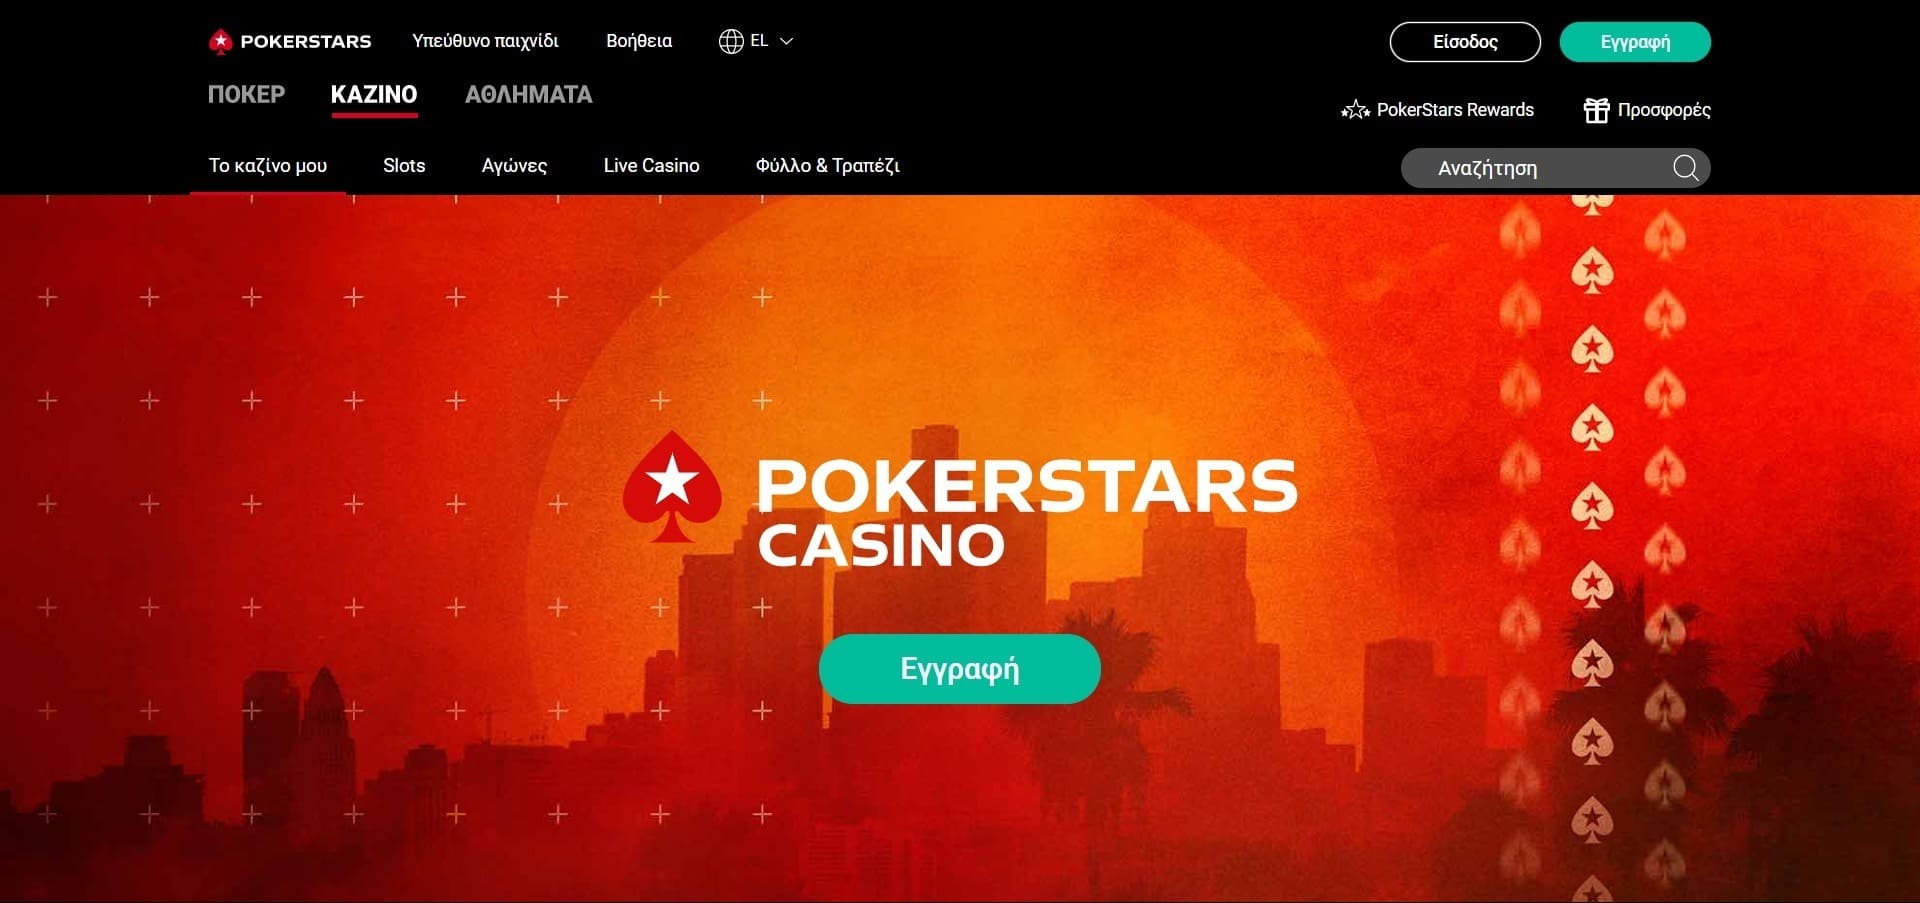 Επίσημος ιστότοπος της Pokerstars casino